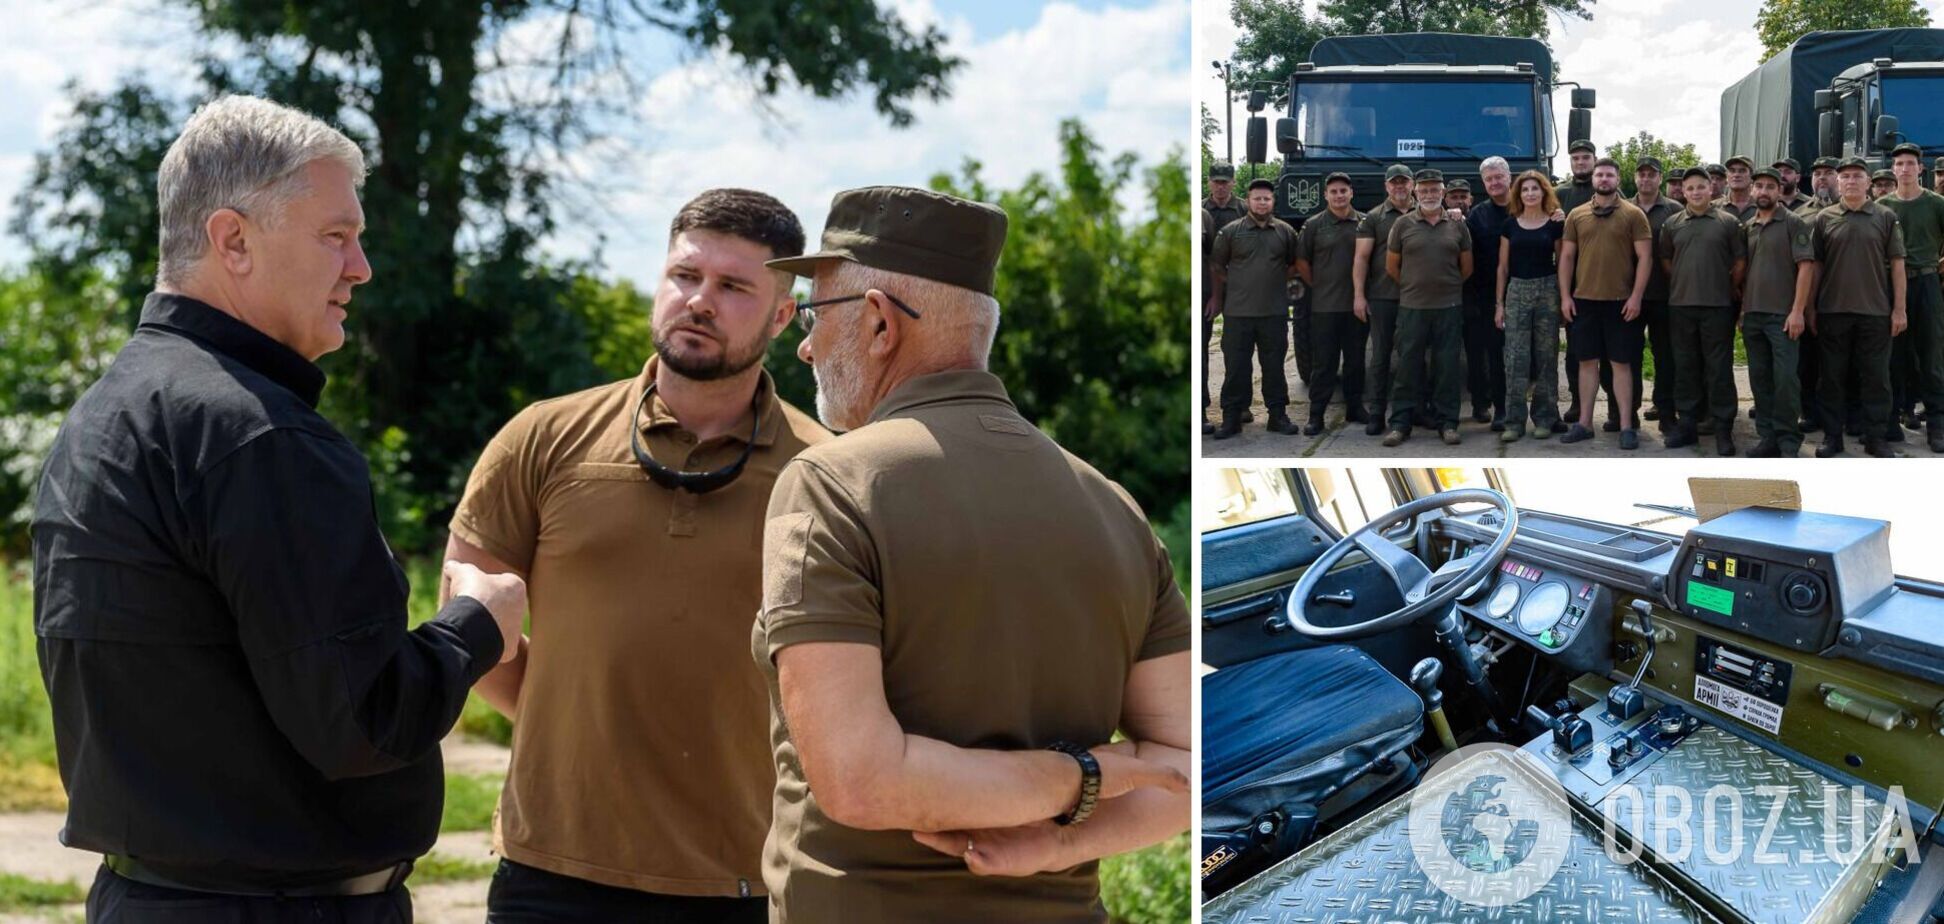 Порошенко передал технику и оборудование спецназовцам 'Азова', которые служат на востоке. Фото и видео